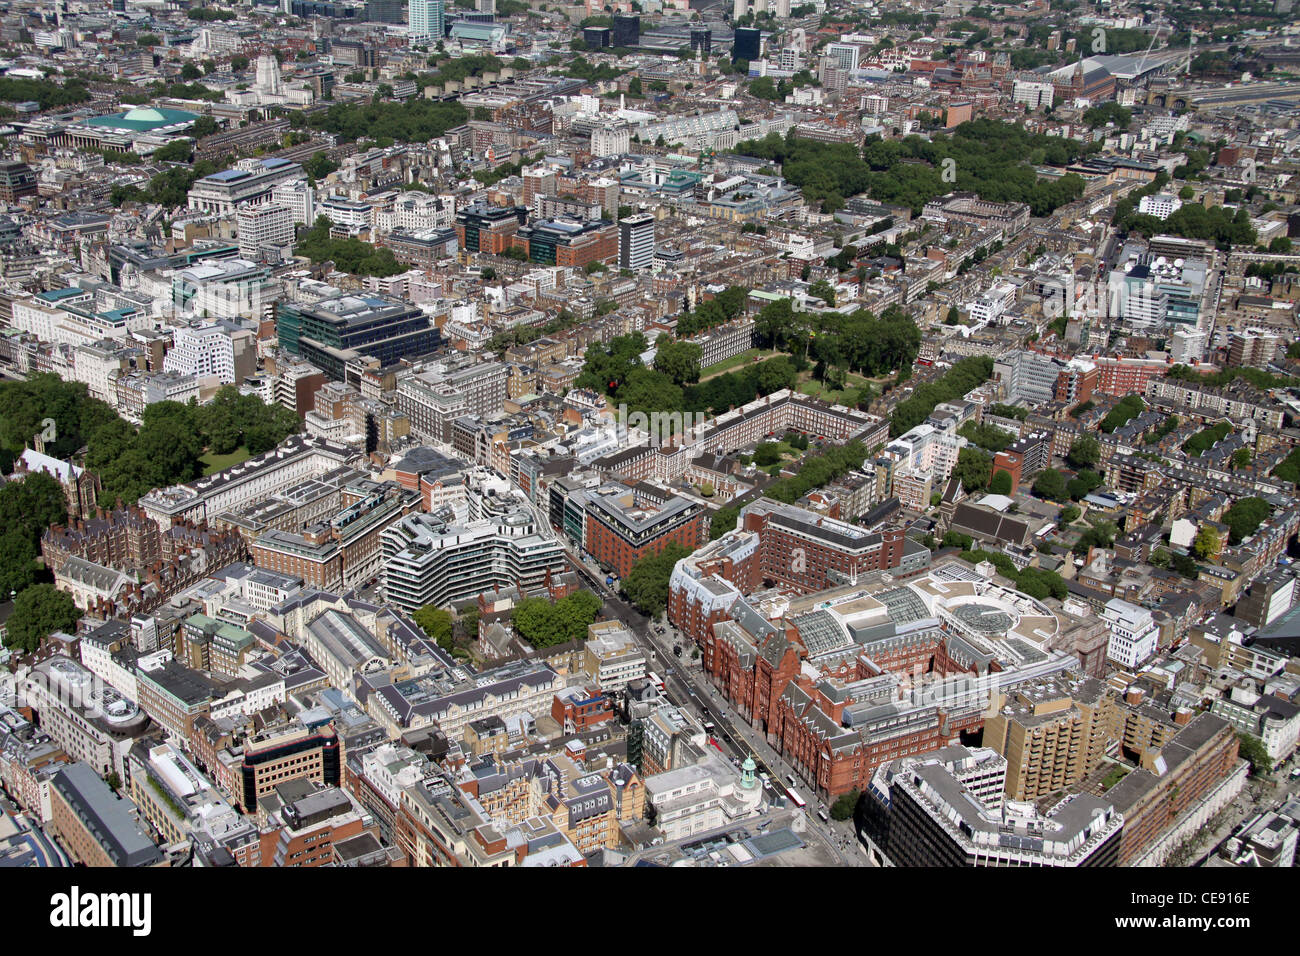 Vista aérea mirando al noroeste desde el centro comercial Waterhouse Square al otro lado de Gray's Inn Square, Holborn, Londres EC1 Foto de stock